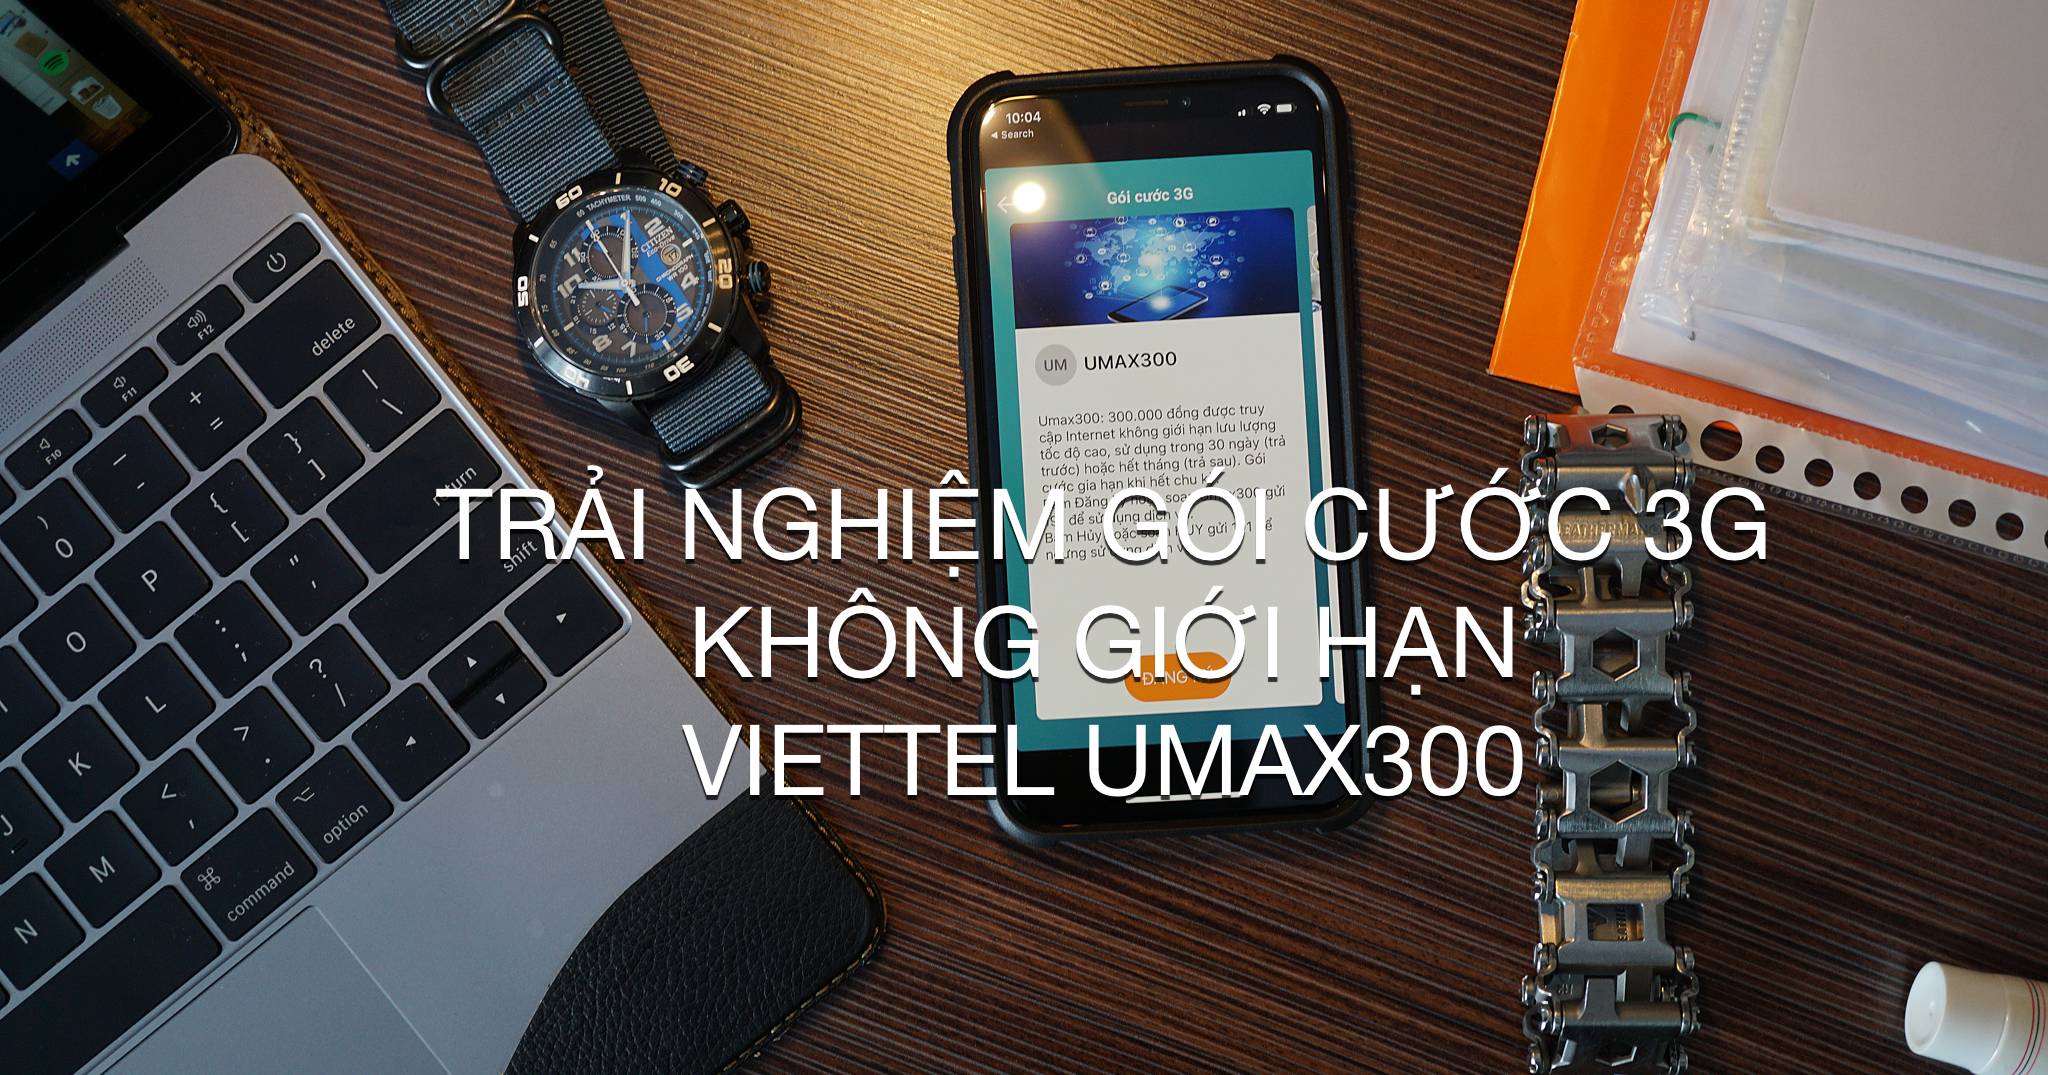 Trải nghiệm gói cước 3G Viettel UMAX300